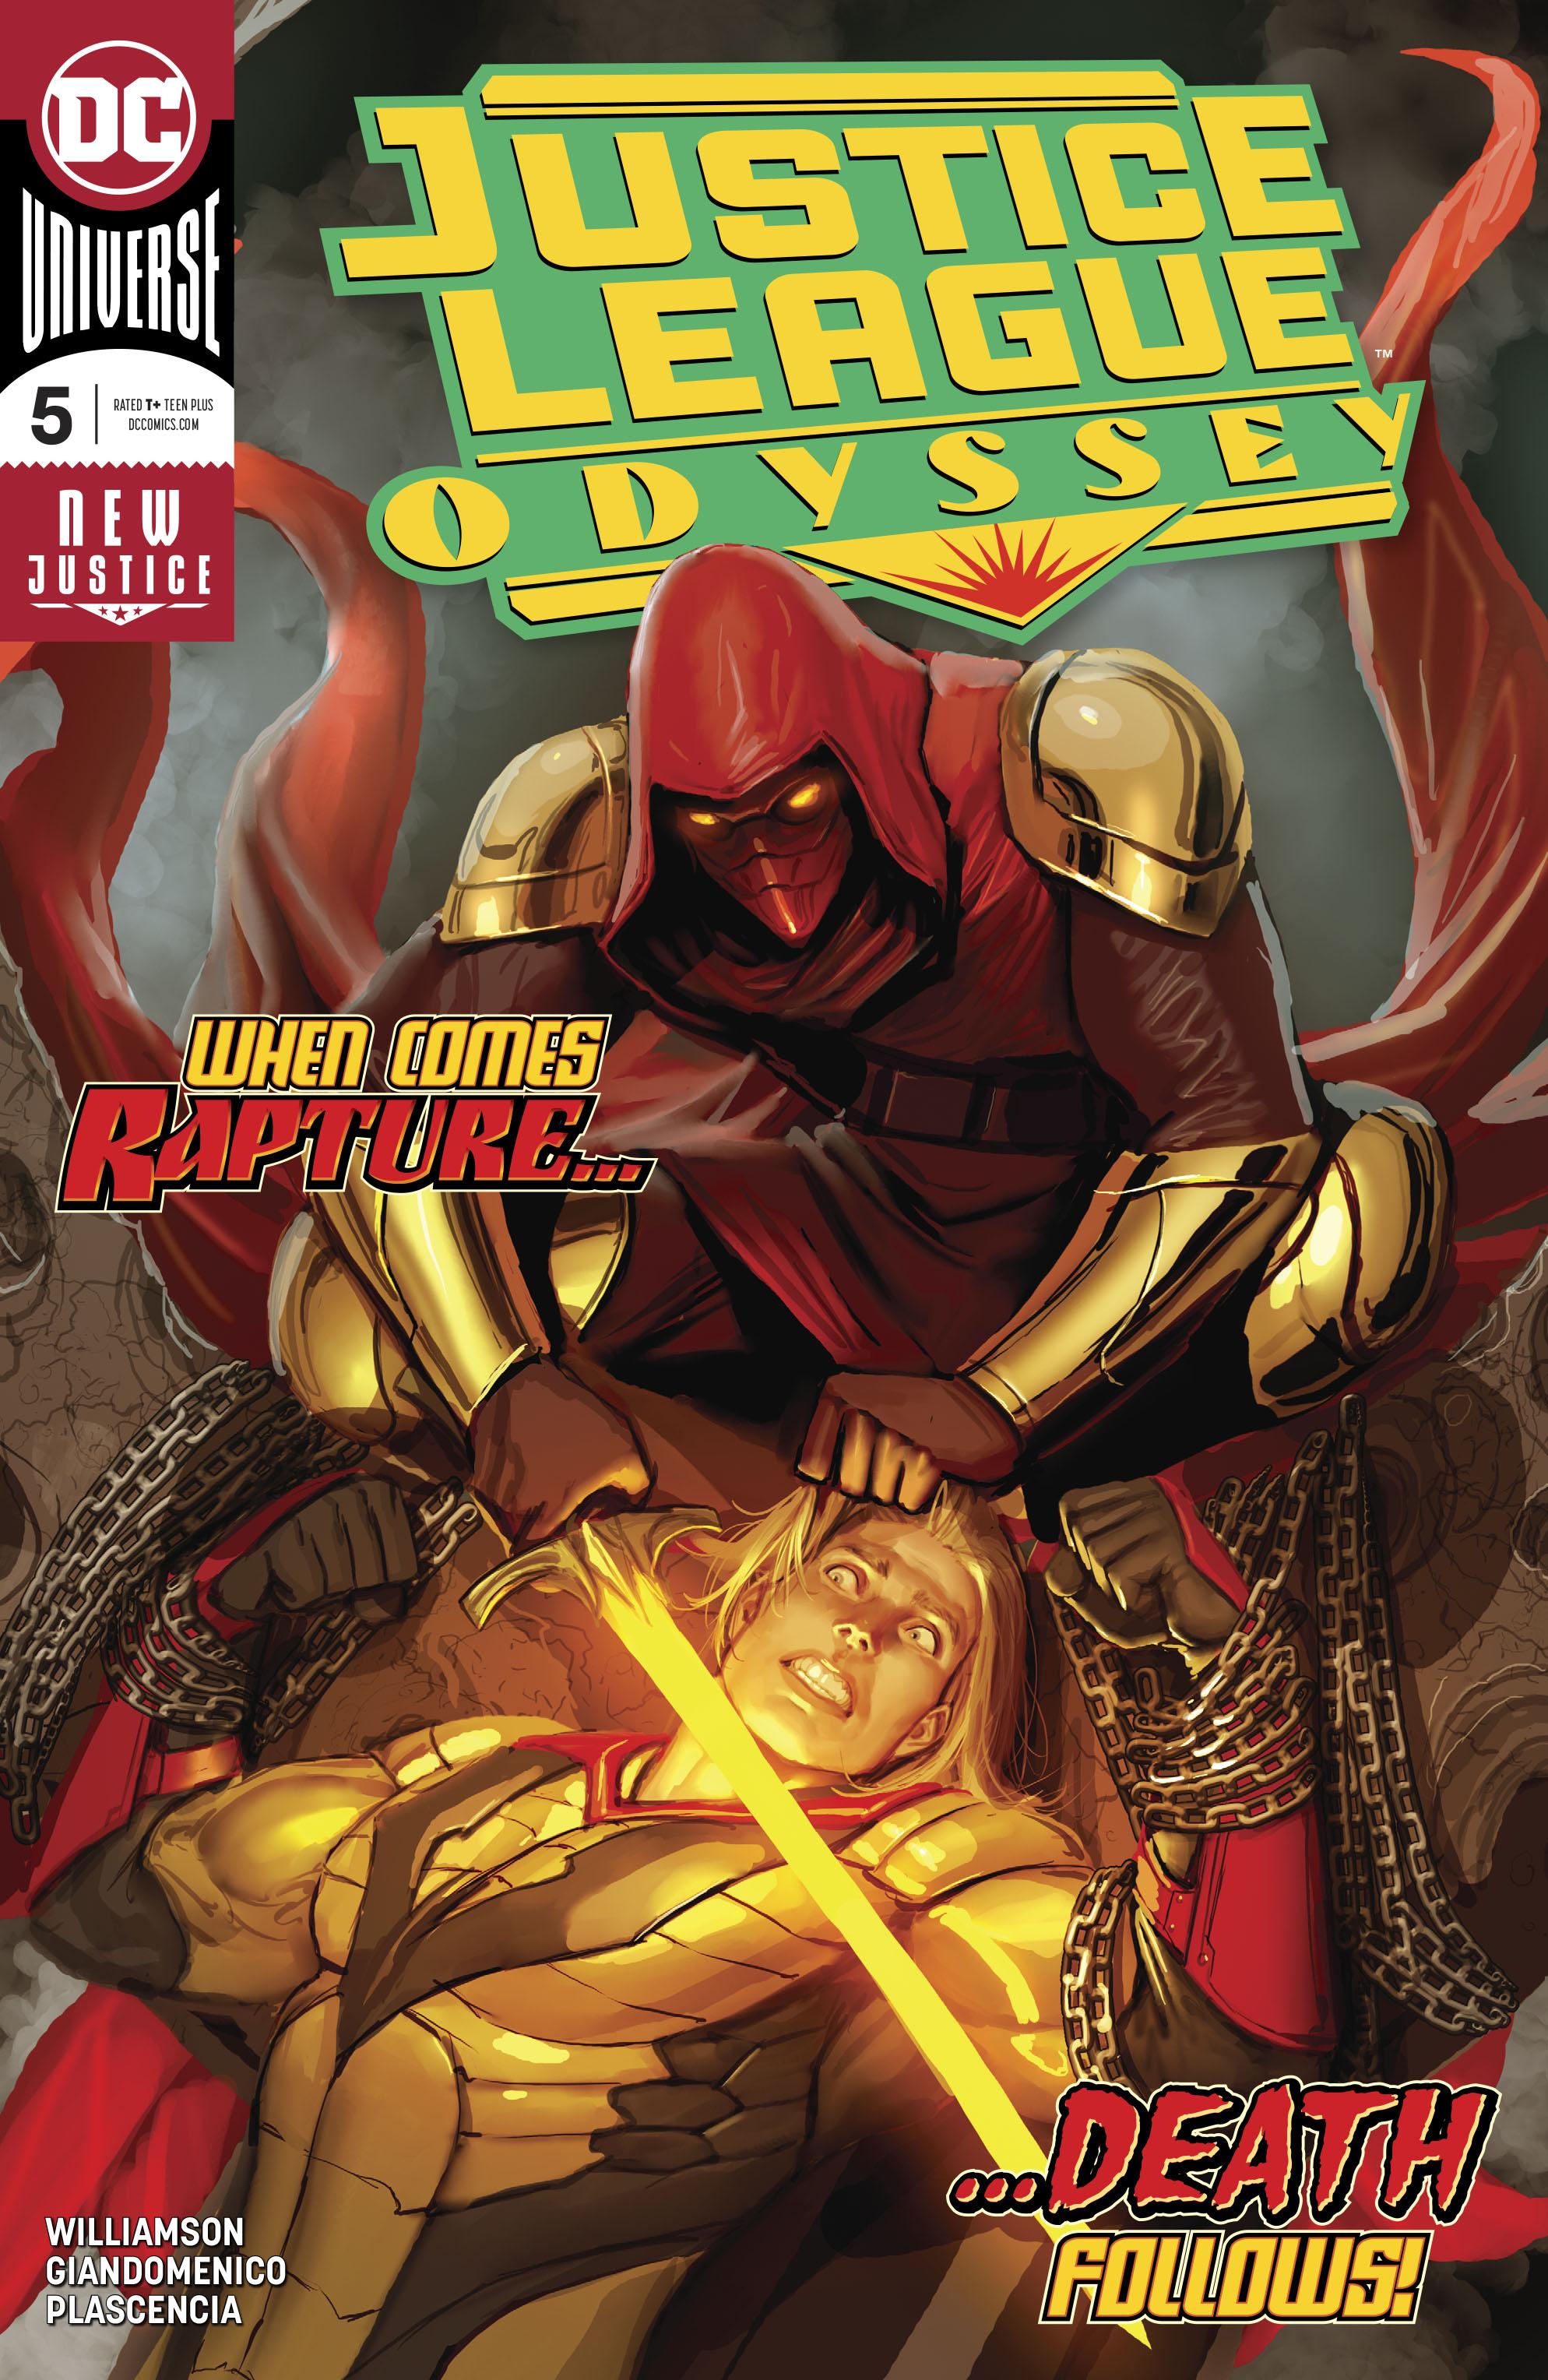 Justice League Odyssey Vol. 1 #5